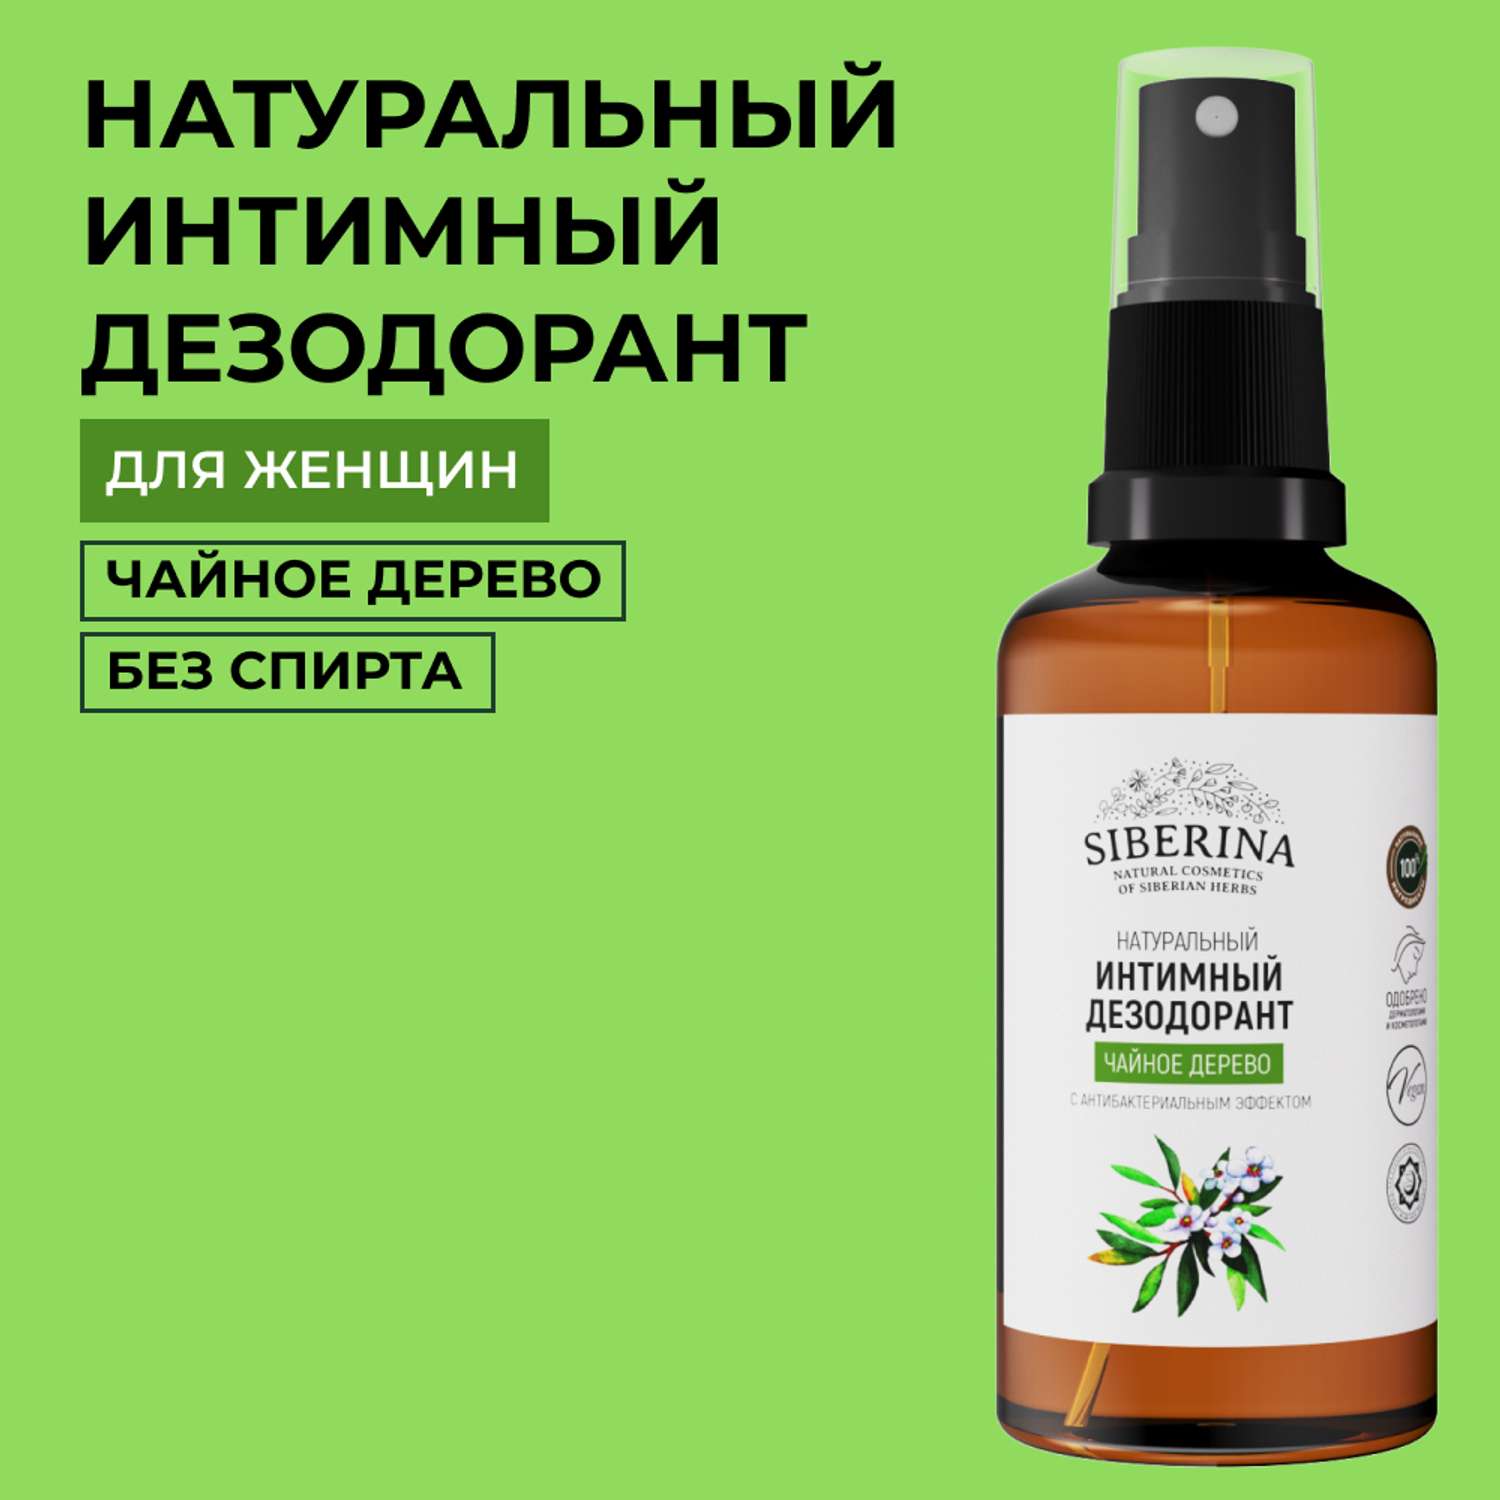 Интимный дезодорант Siberina натуральный «Чайное дерево» антибактериальный без парабенов 50 мл - фото 1